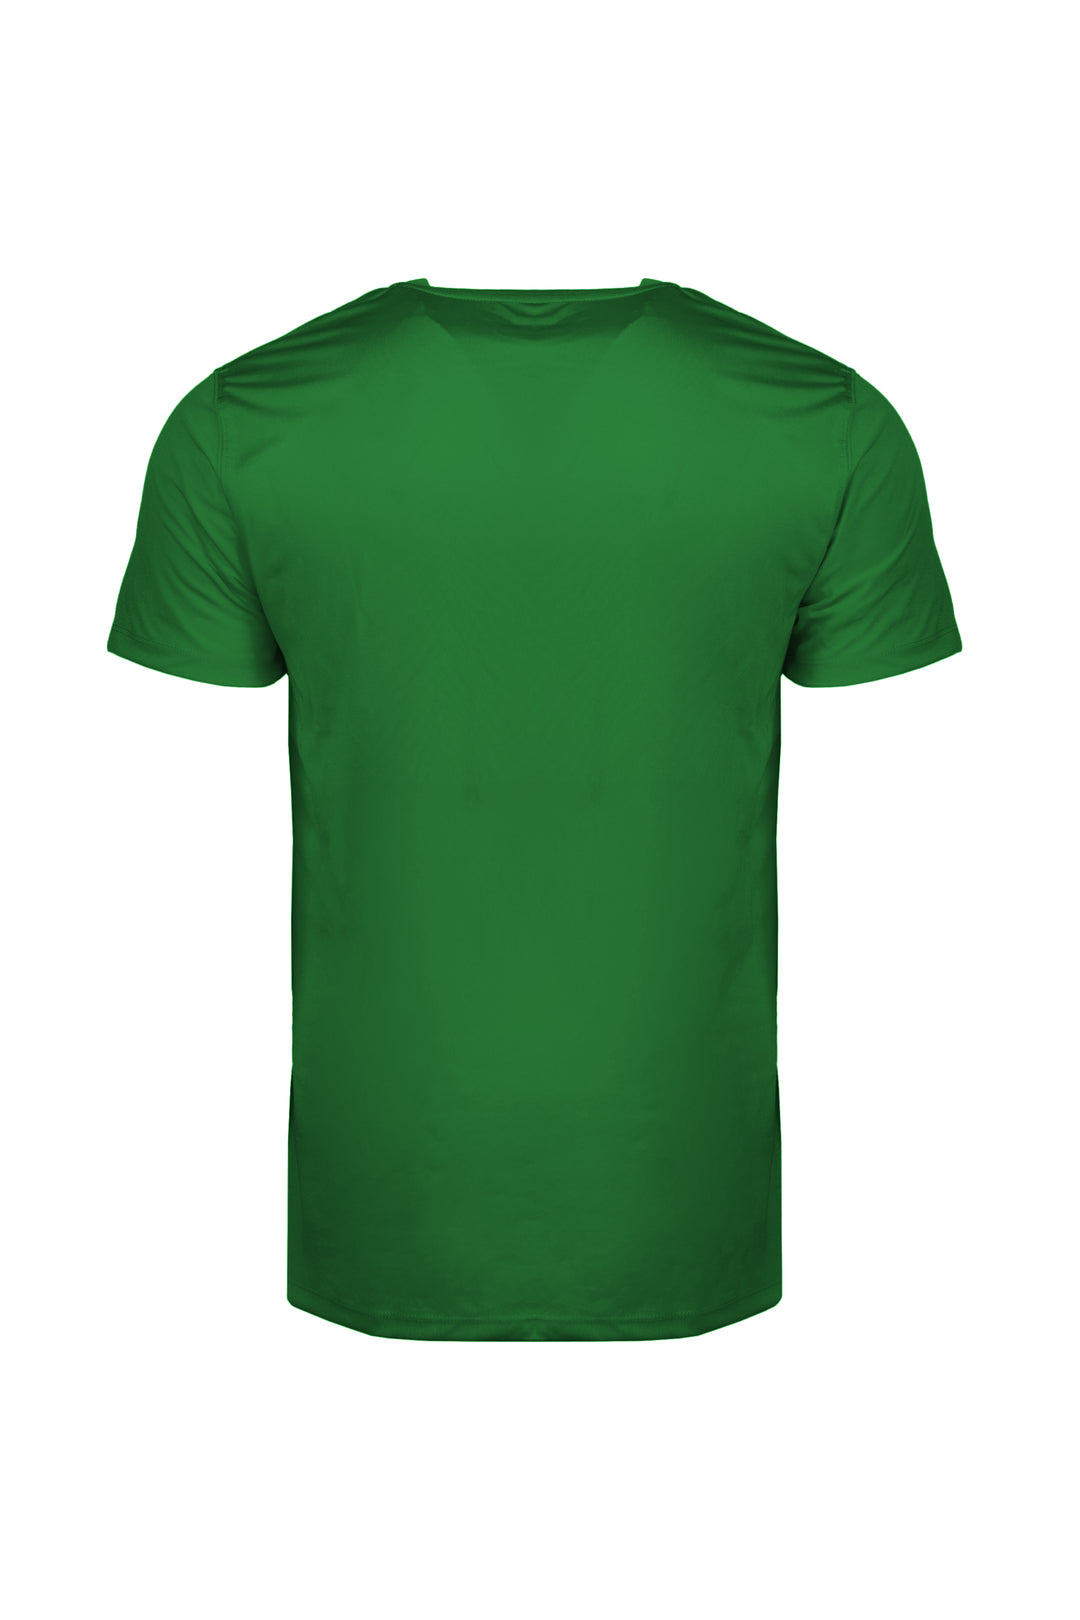 T-shirts sportif [Homme] [Vert]